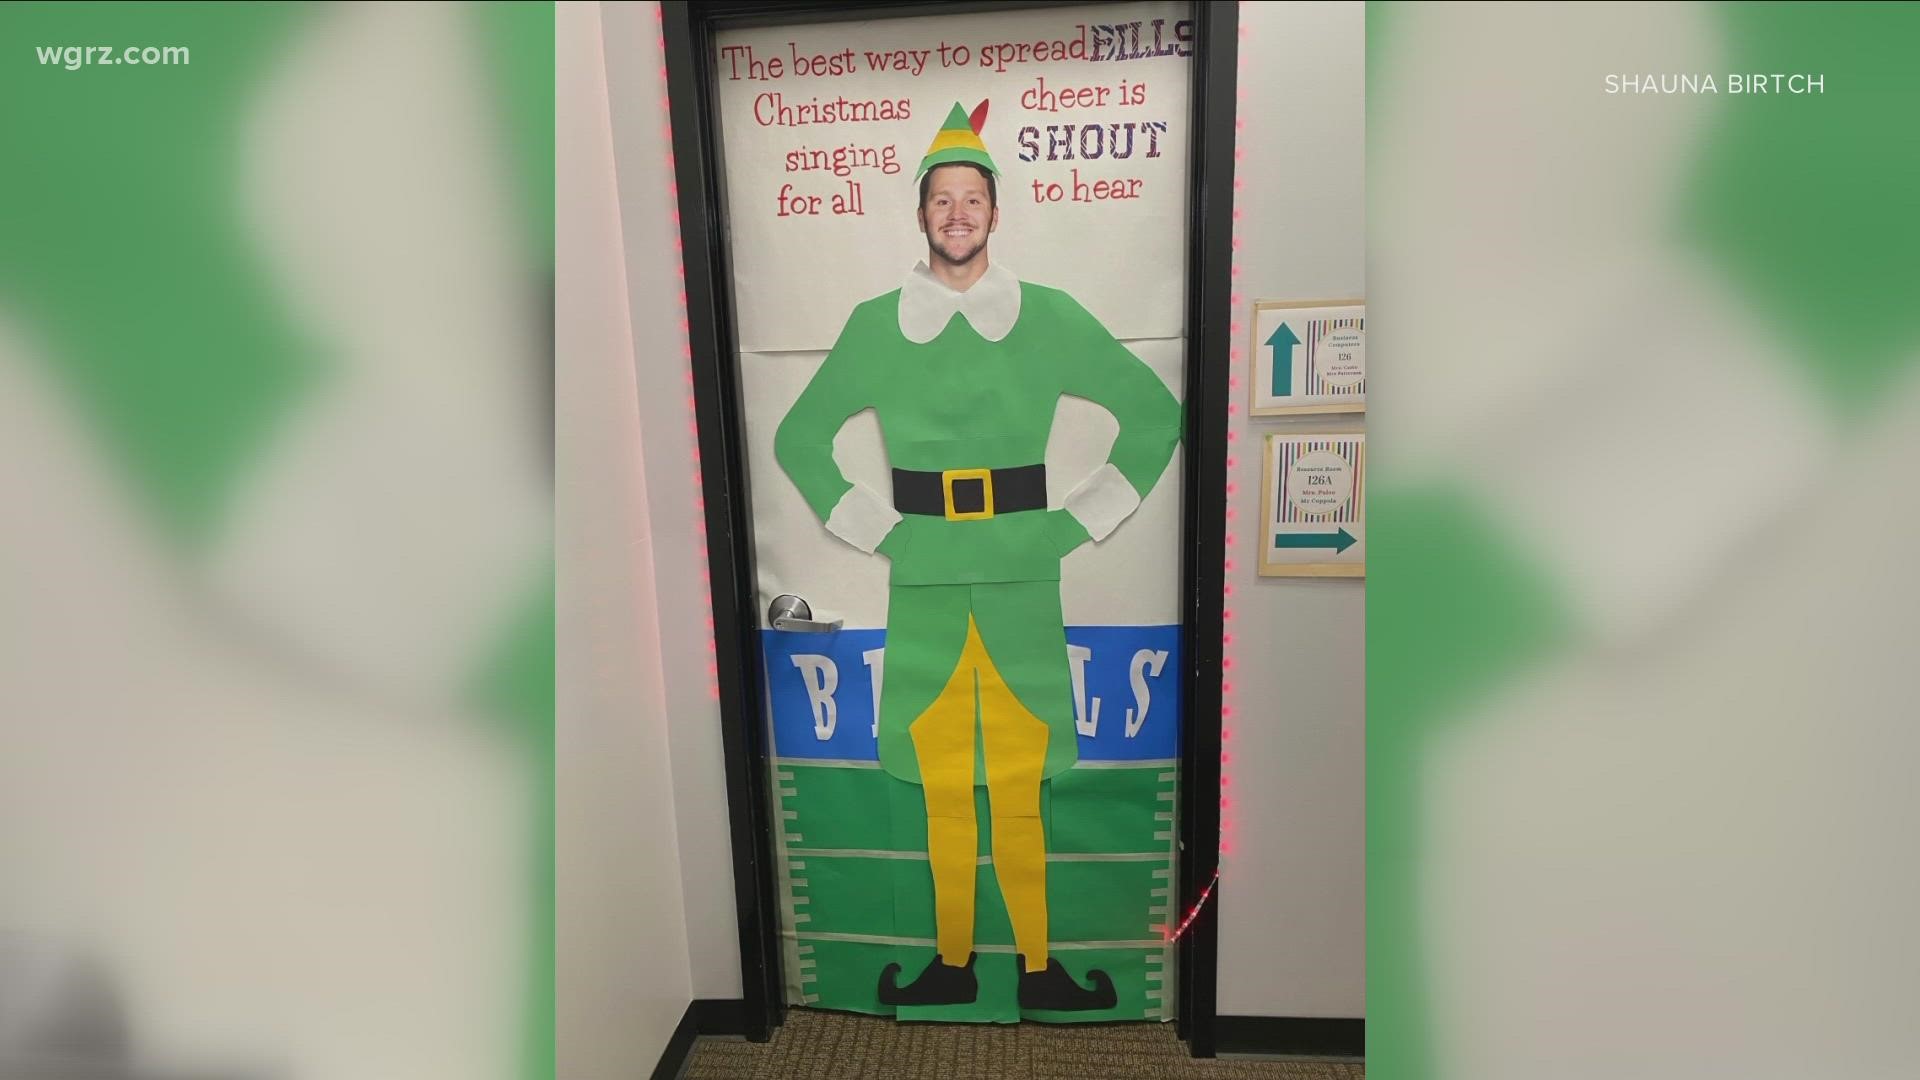 Their classroom door decor is part Christmas spirit, part Bills pride.